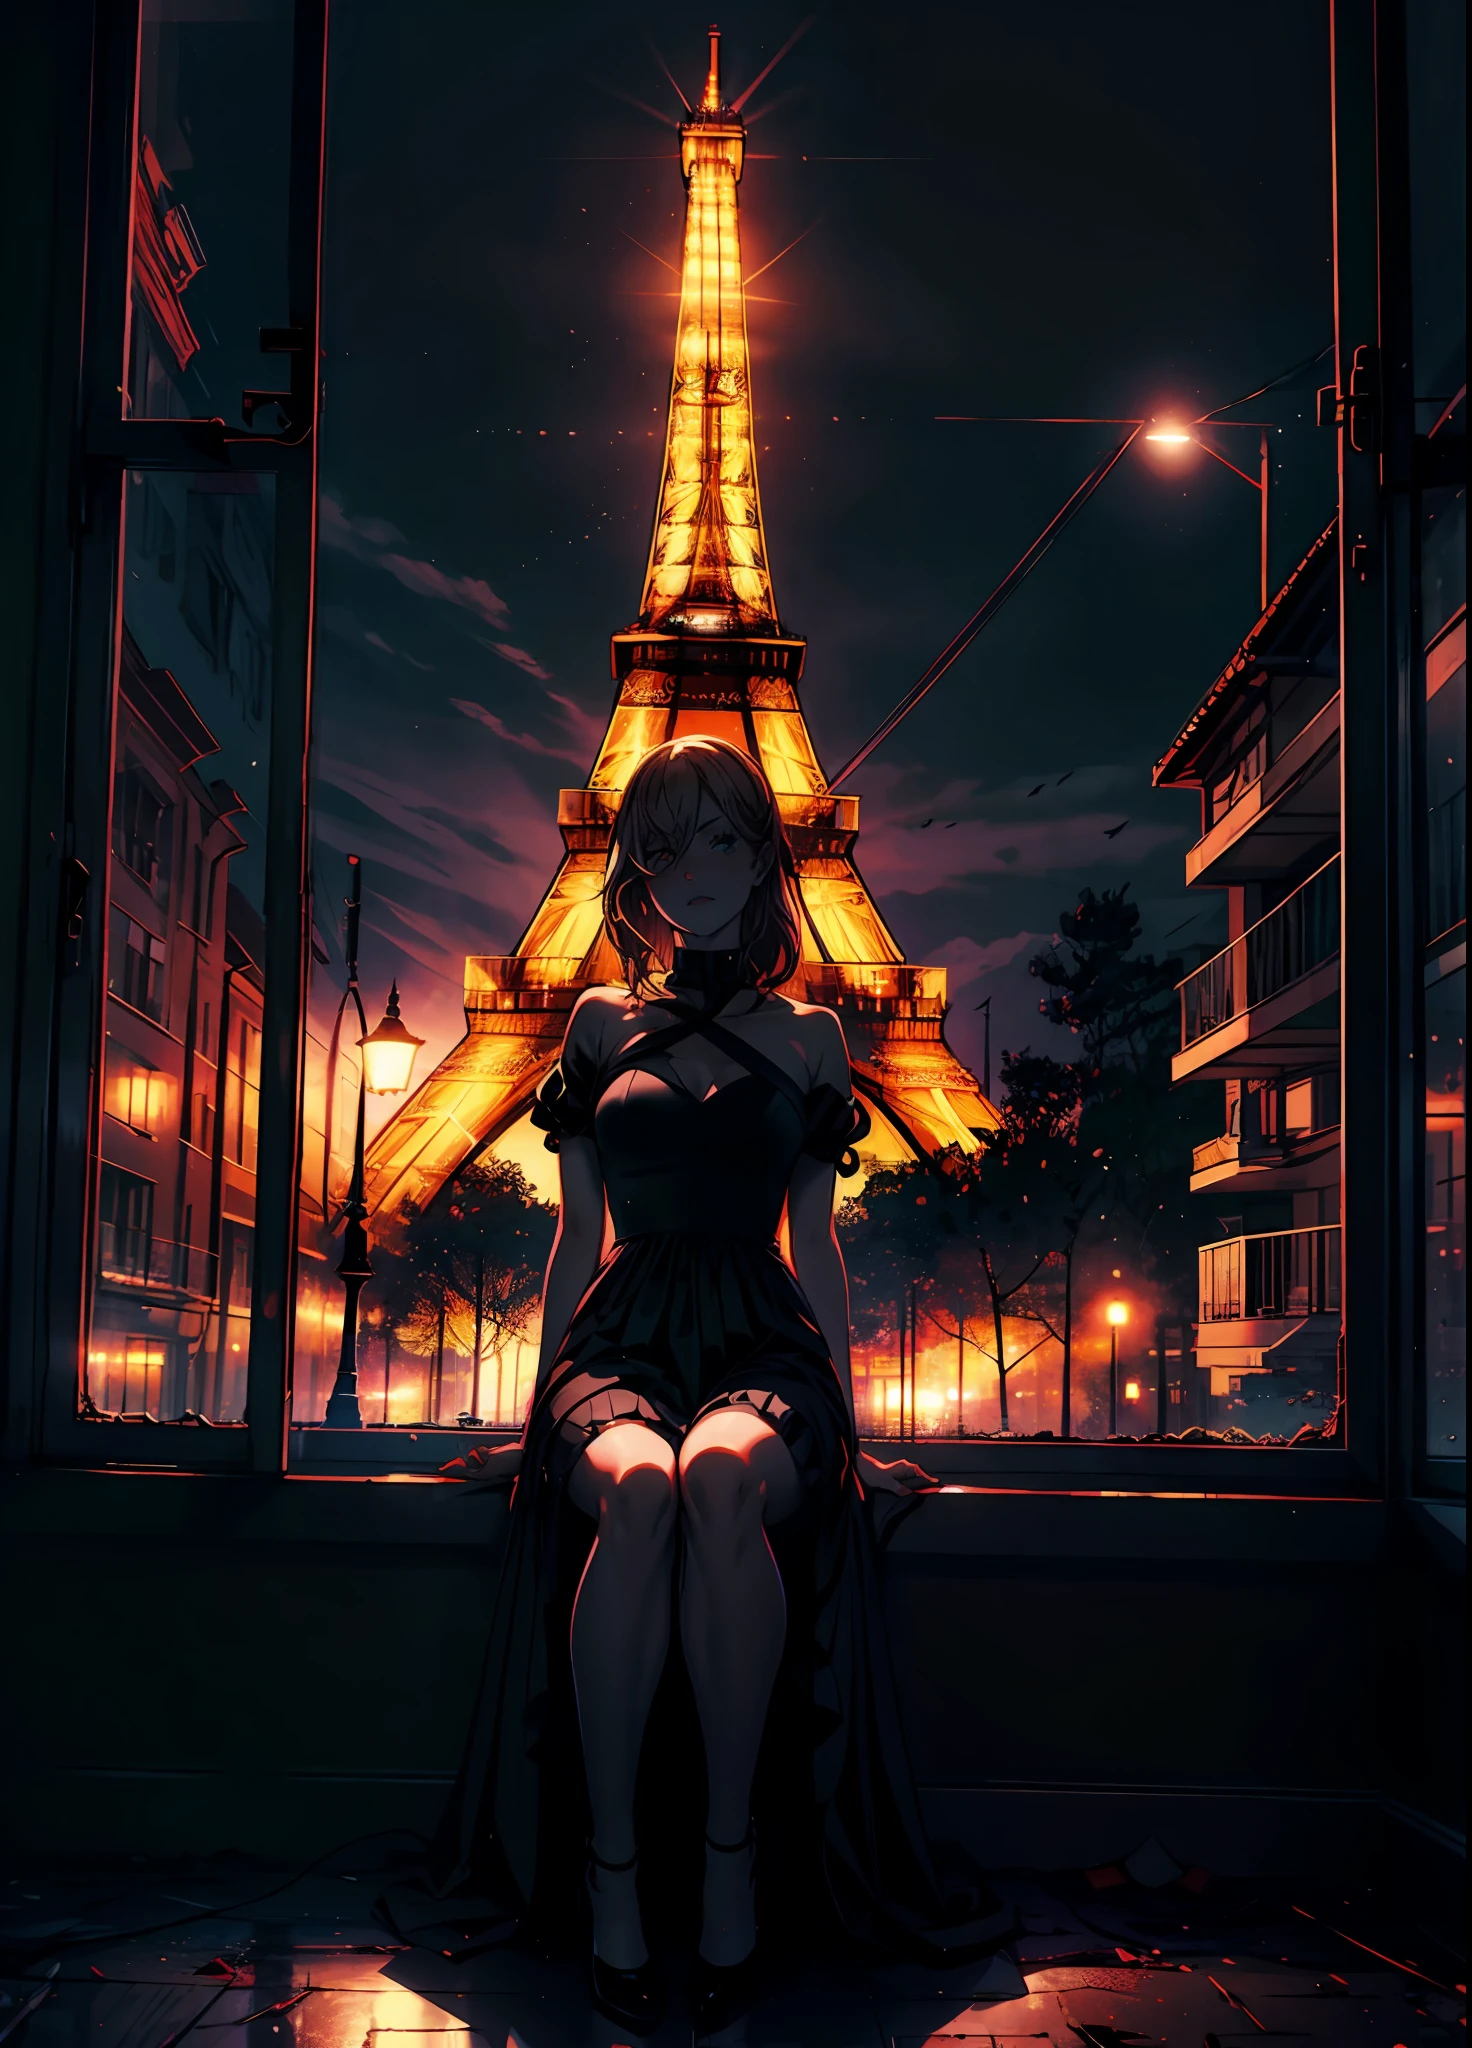 El poder de una motosierra con un vestido de noche negro., sentado en el marco de la ventana, medianoche, No hay luces en la habitación,  Brillante Torre Eiffel en el fondo